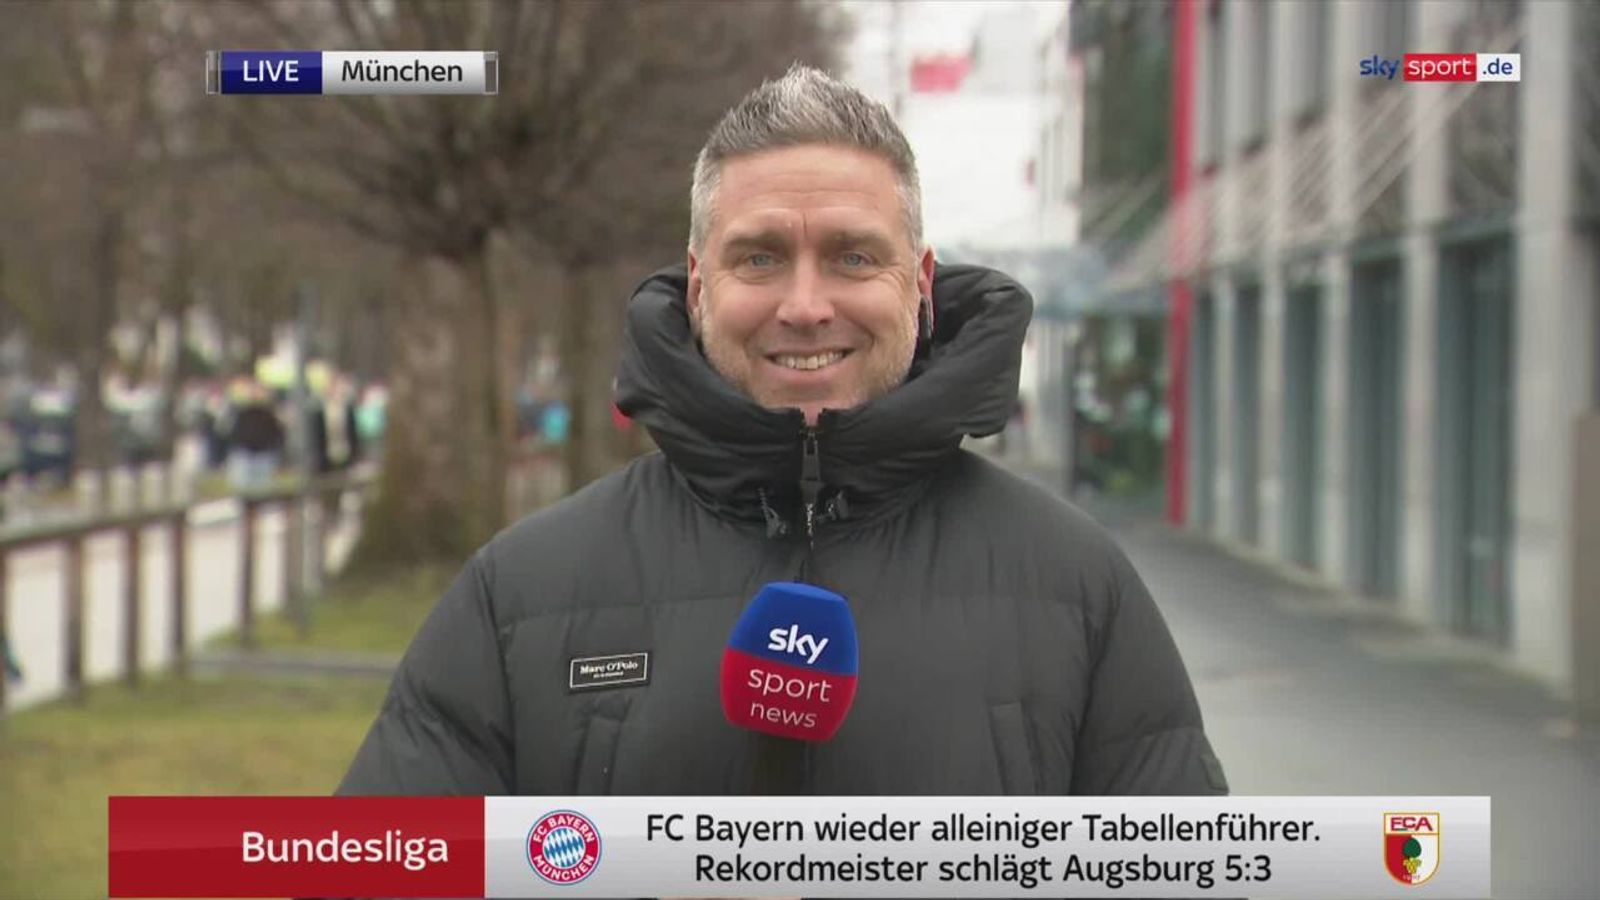 Bundesliga Beim FC Bayern belebt die Konkurrenz das Geschäft Fußball News Sky Sport